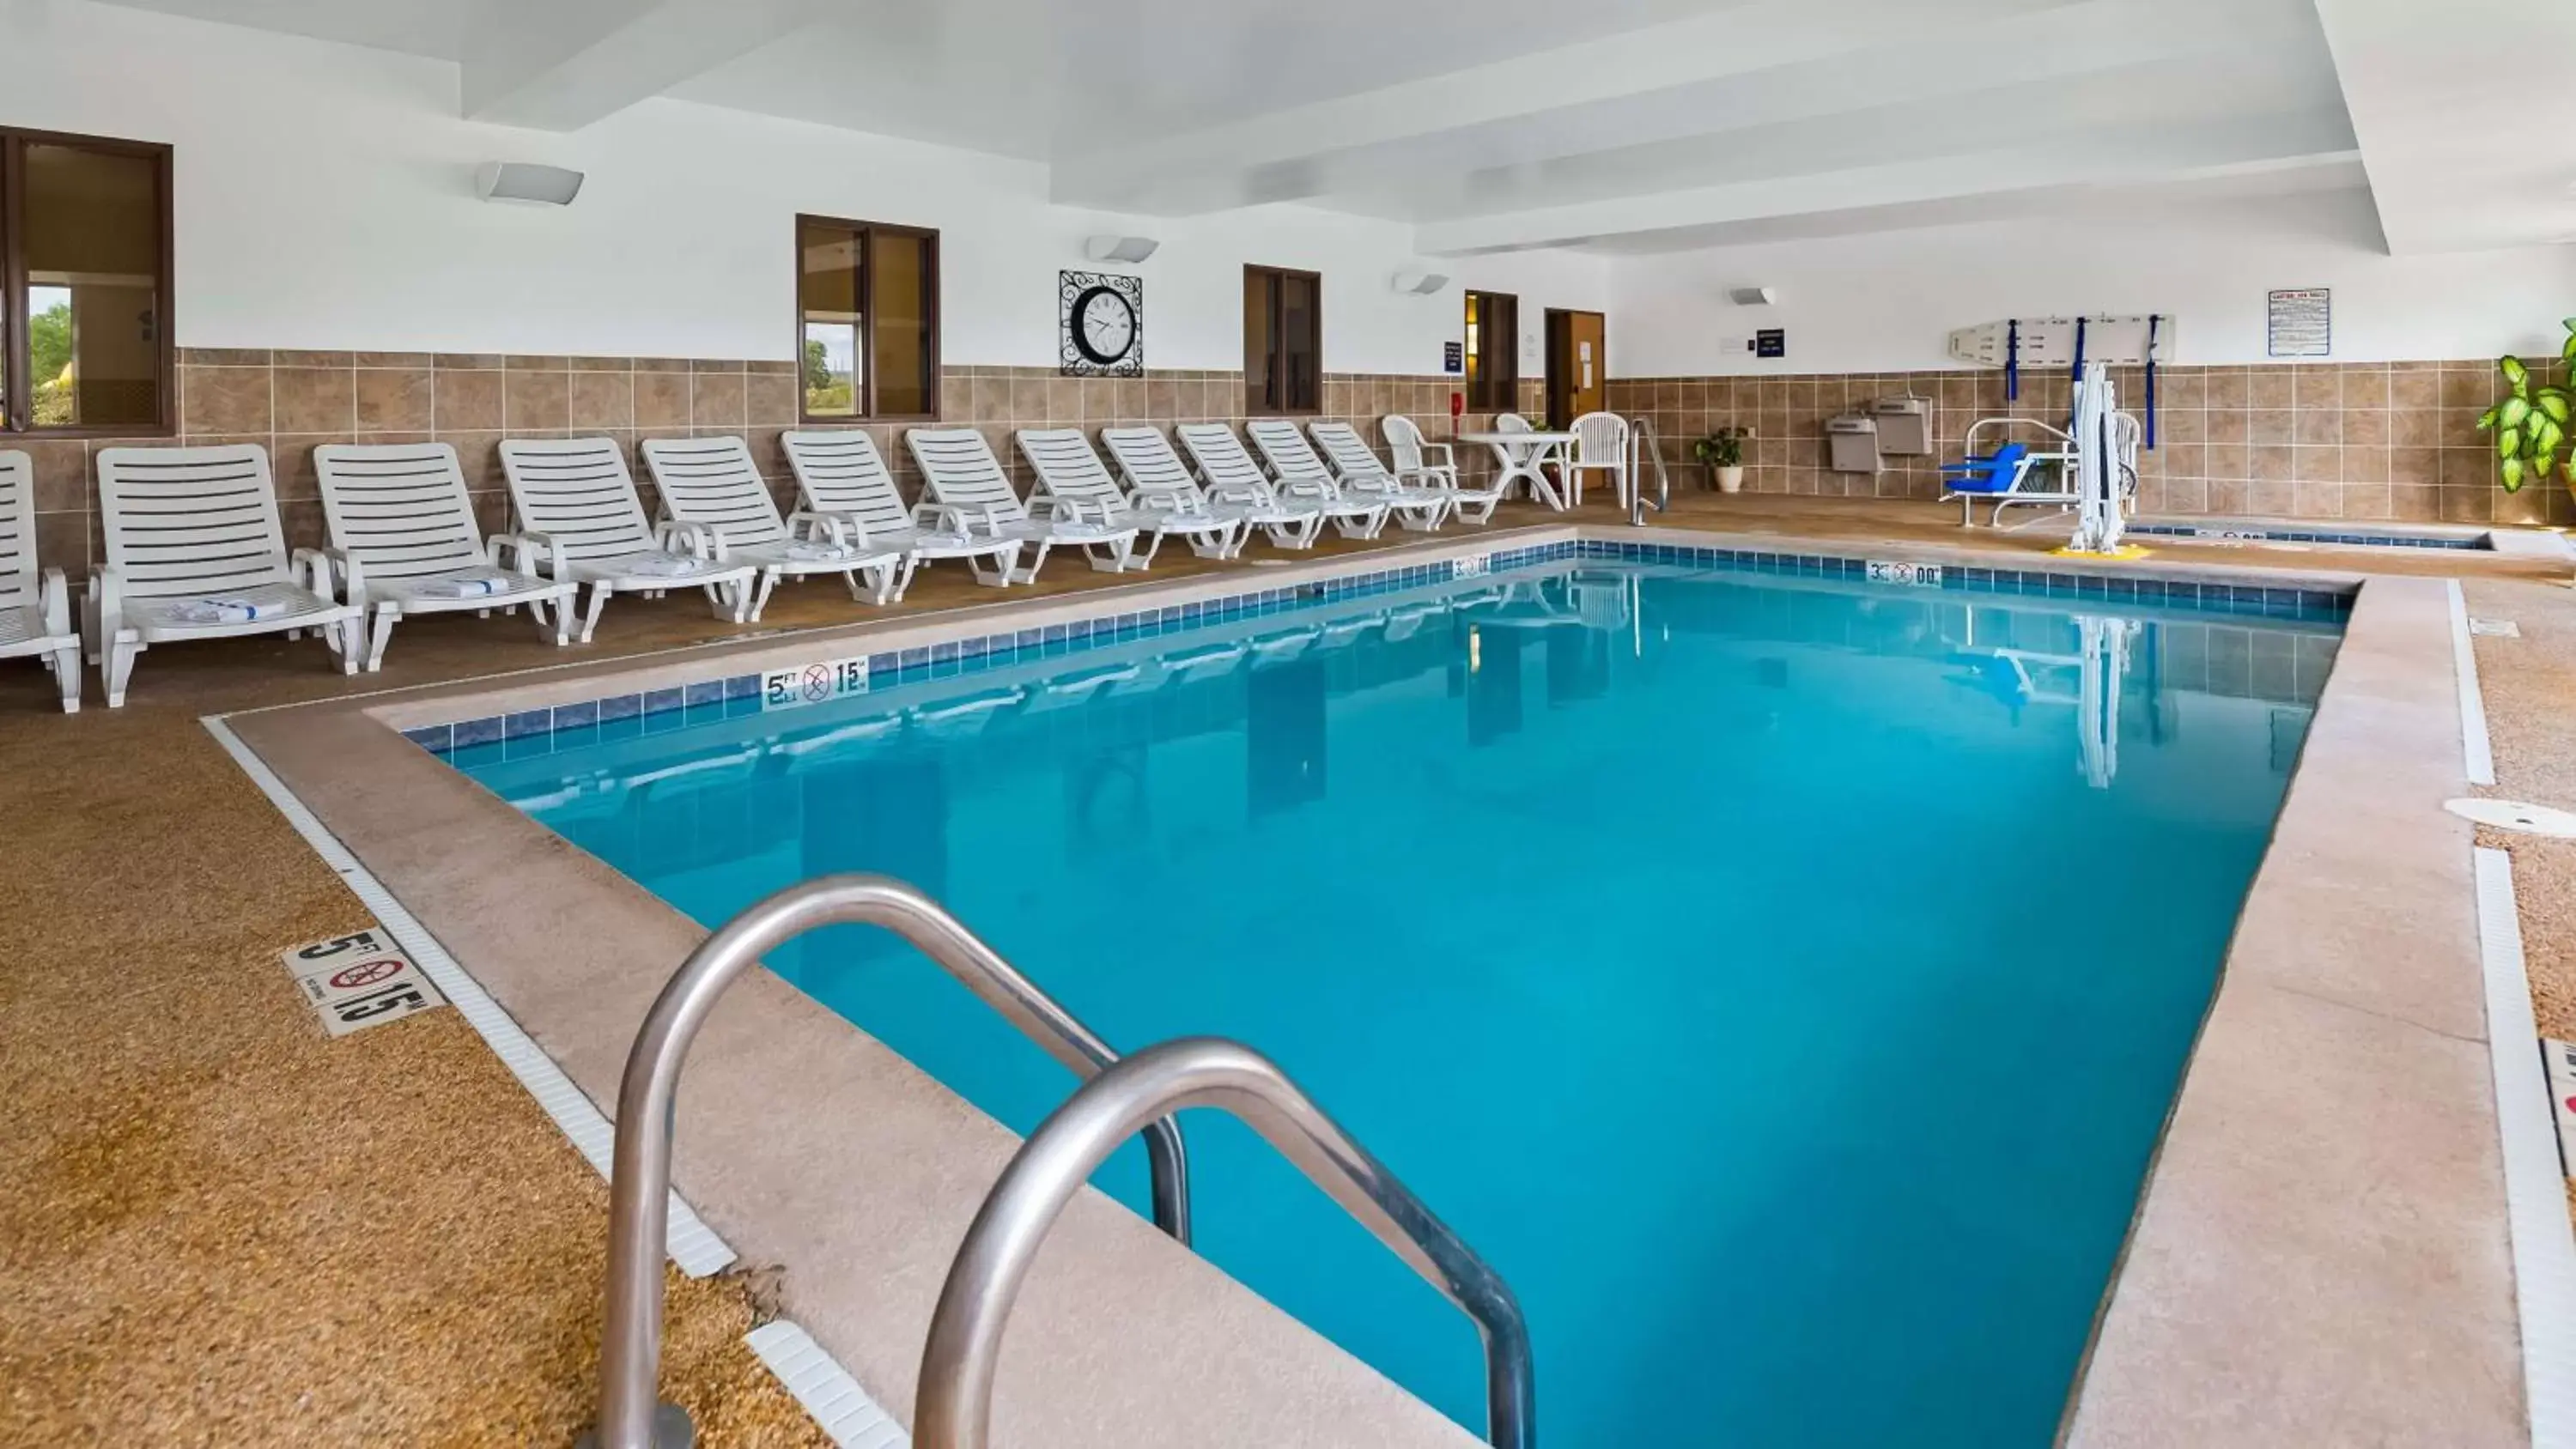 On site, Swimming Pool in Best Western Penn-Ohio Inn & Suites